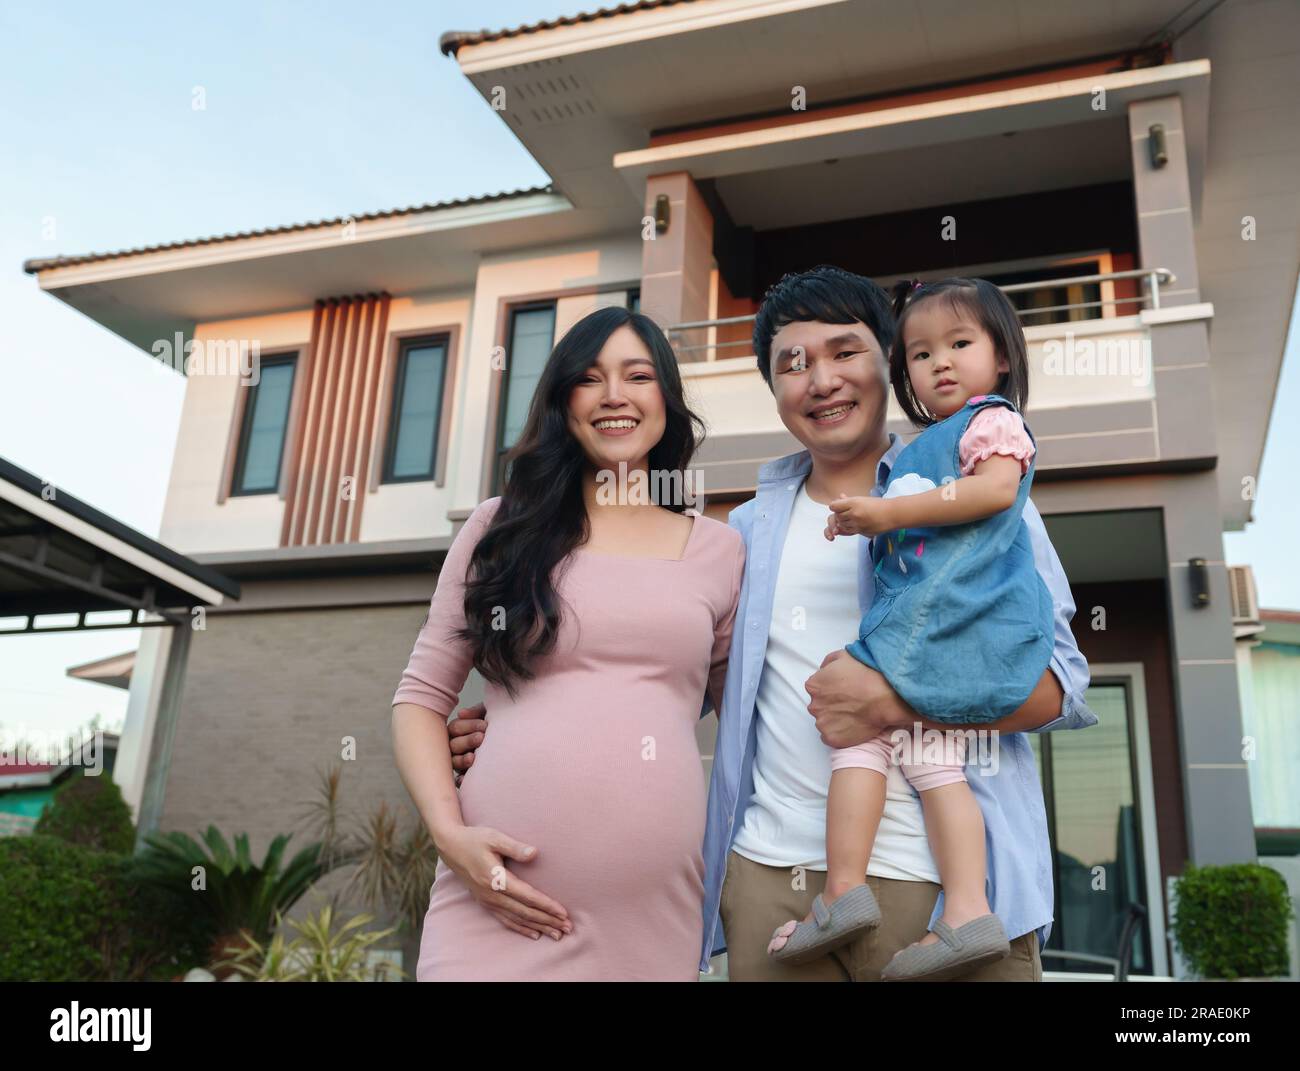 famiglia felice fuori casa, marito, moglie incinta e bambina Foto Stock